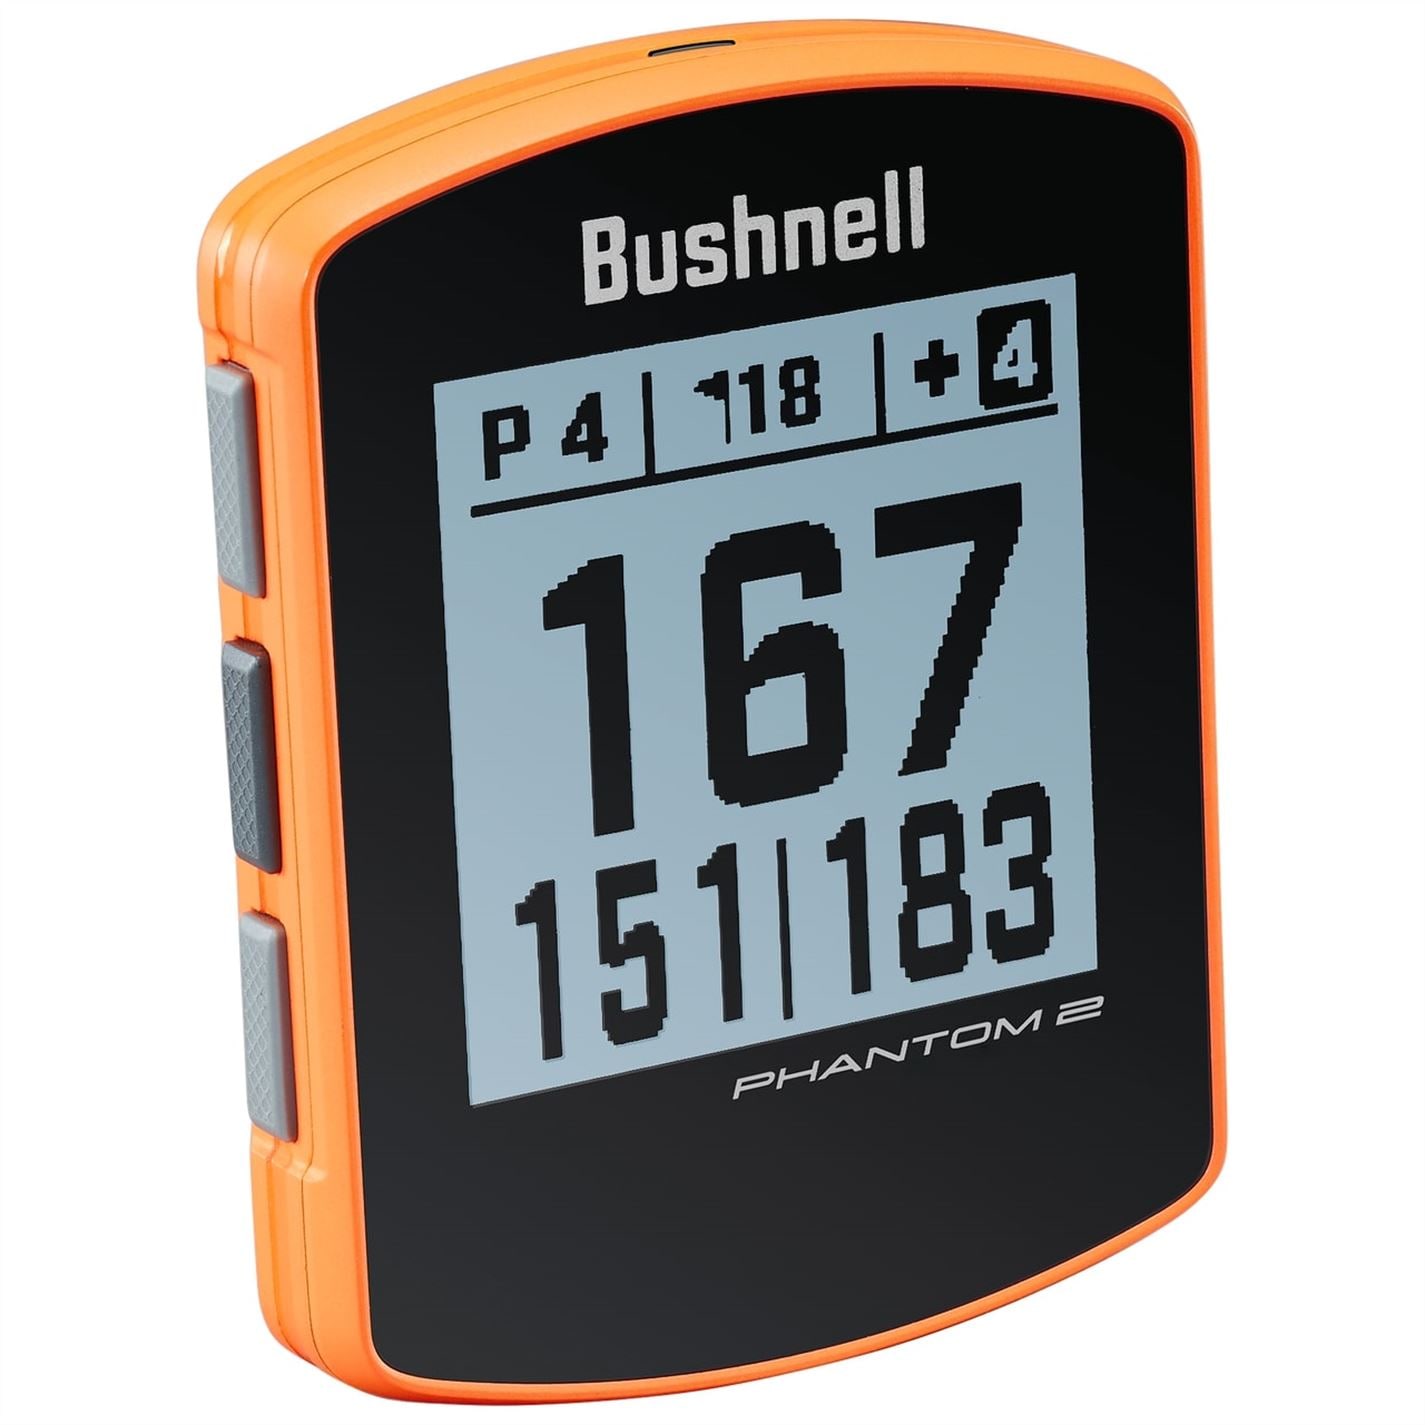 Bushnell Phantom 2 portocaliu